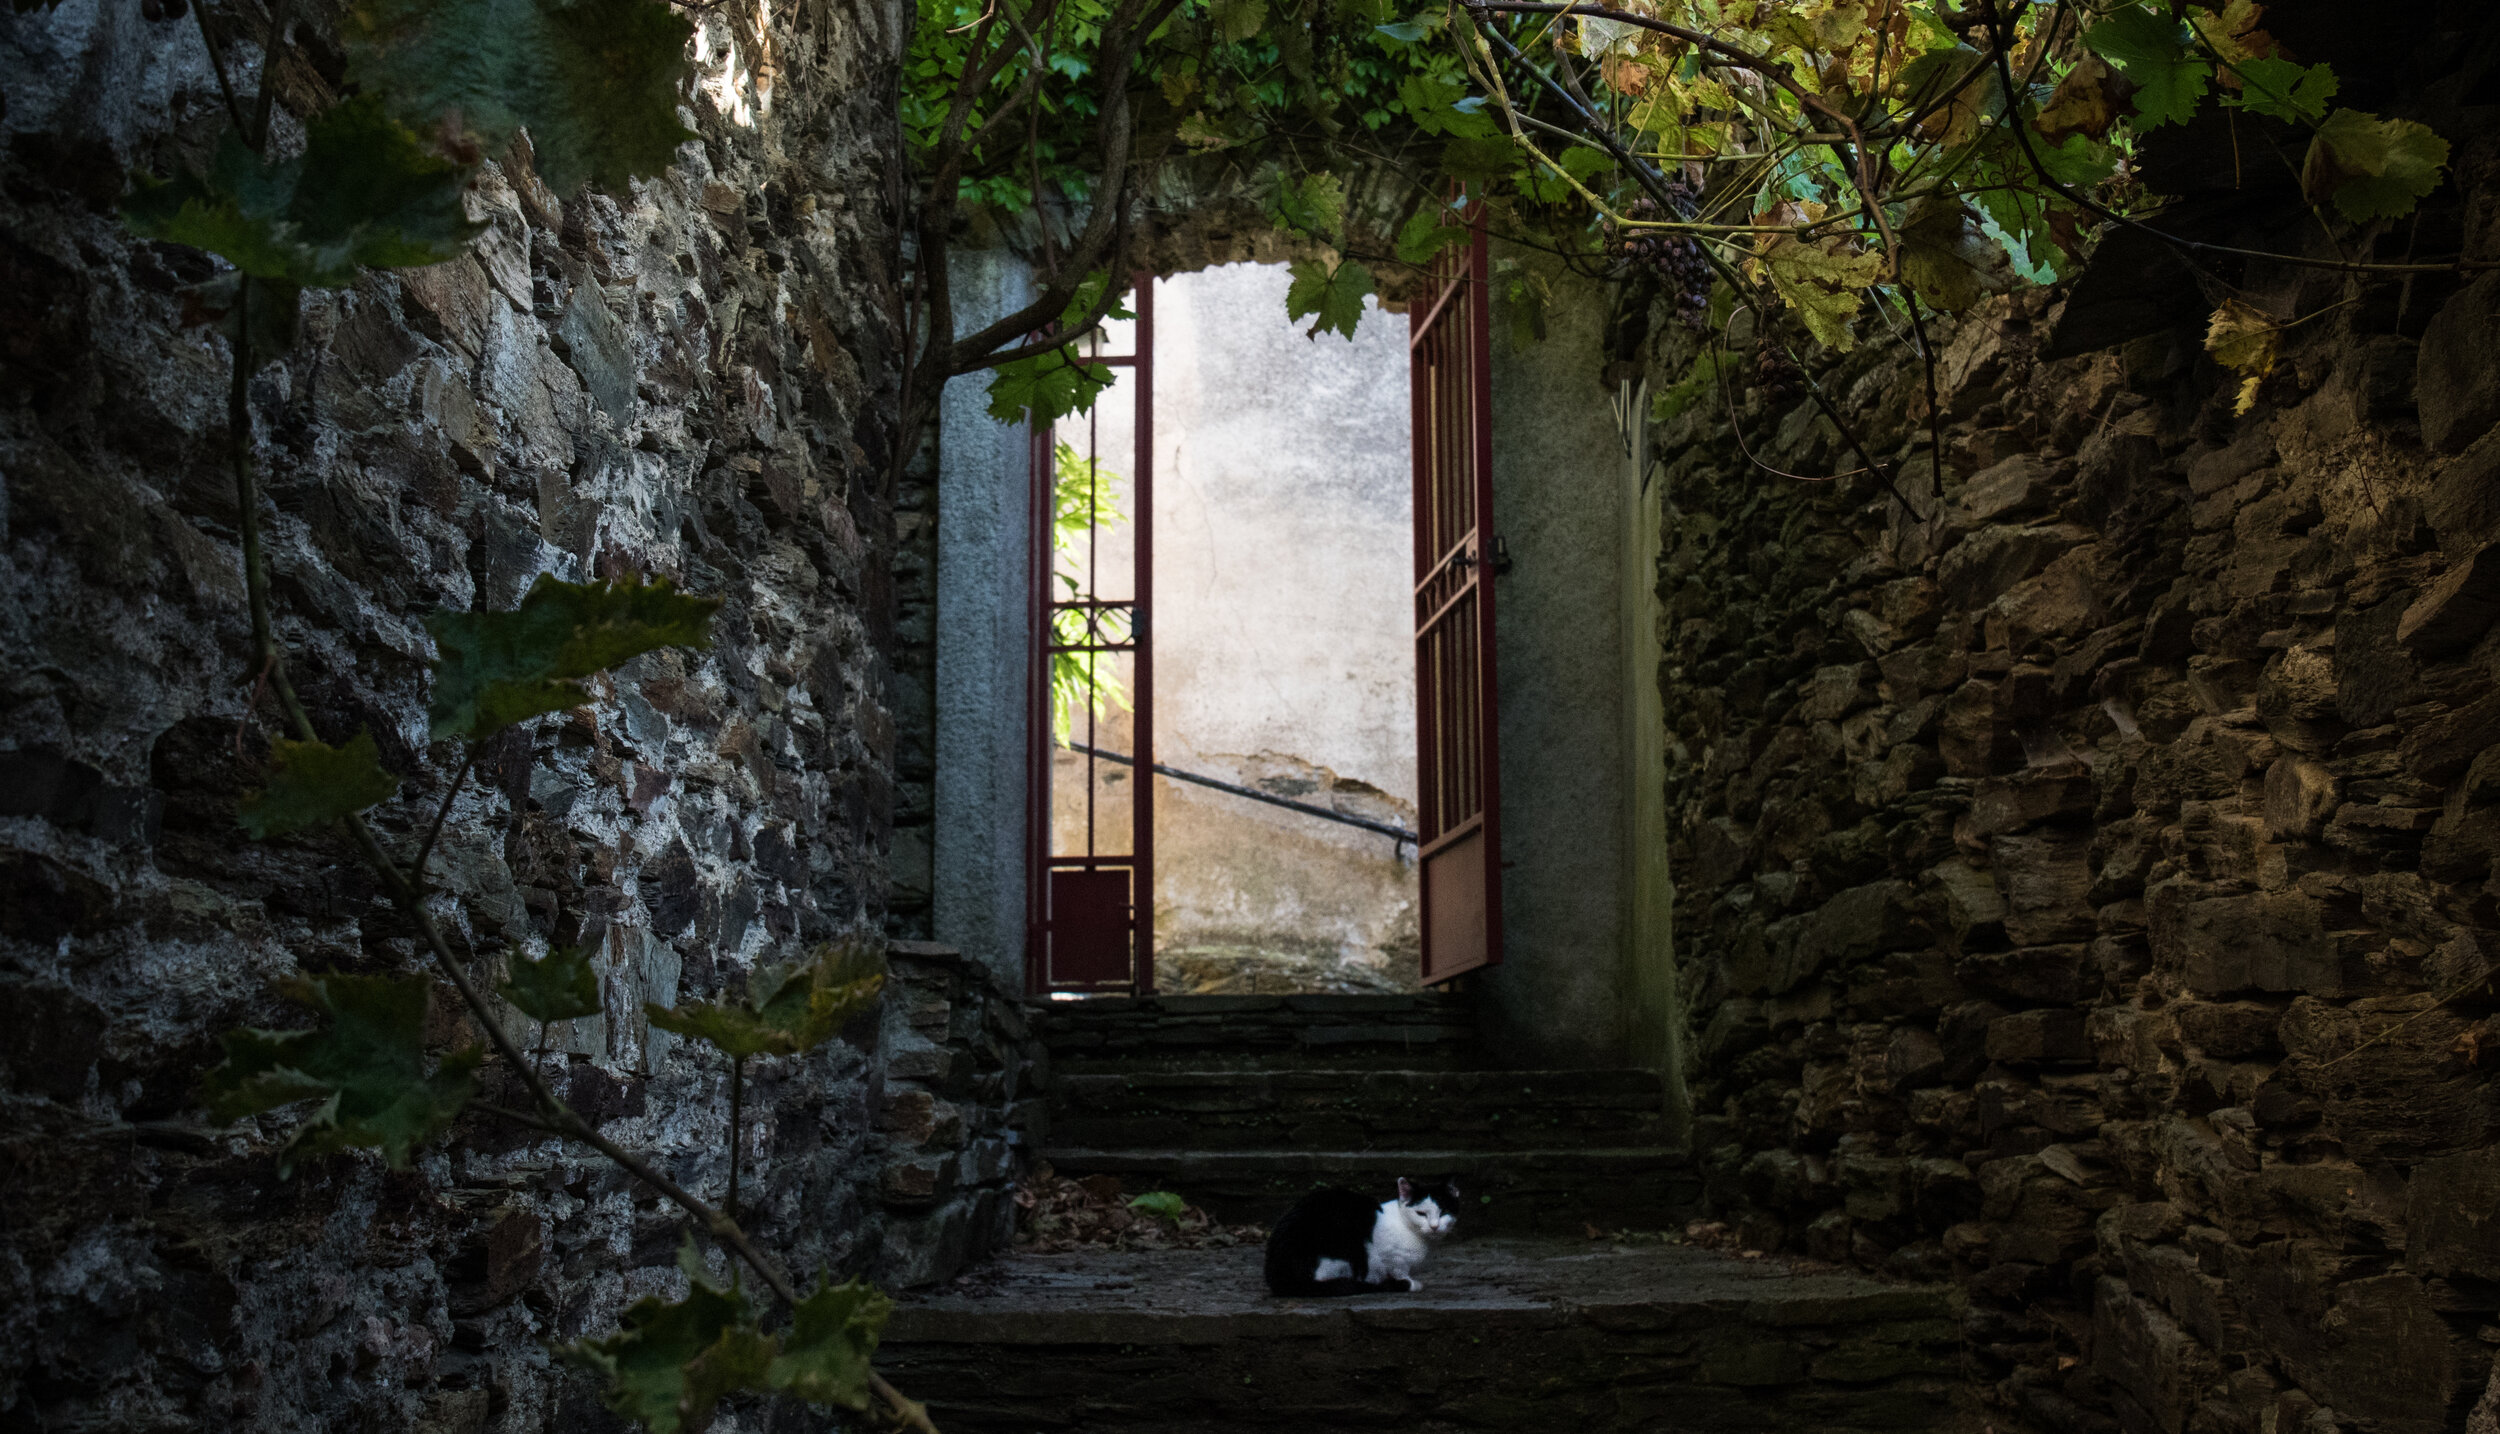   A cat in the hillside village of Labastide, France  